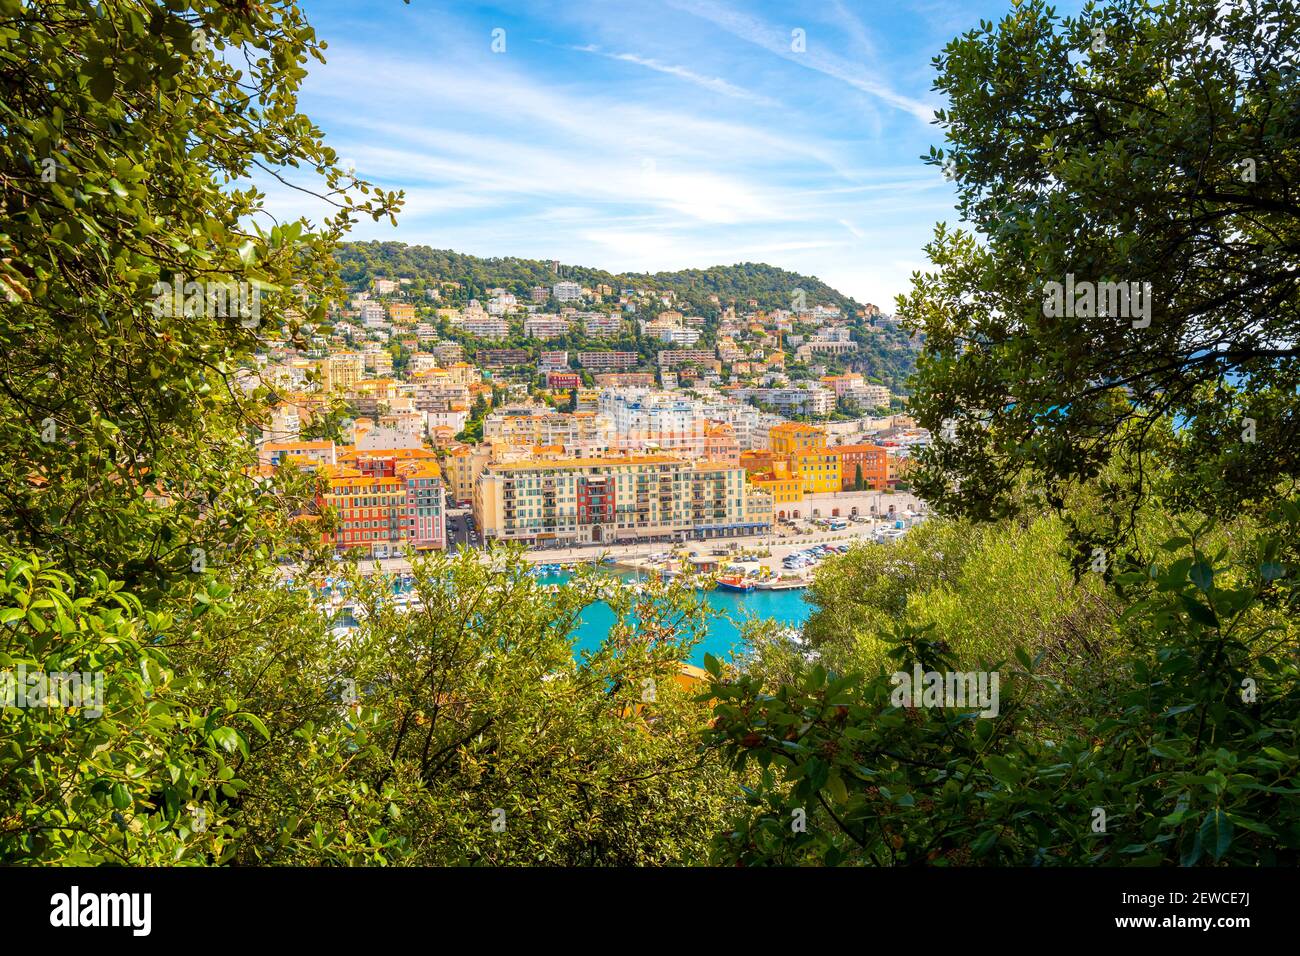 Blick durch die Bäume auf dem Burghügel des alten Hafenhafens von Nizza, Frankreich, an der französischen Riviera. Stockfoto